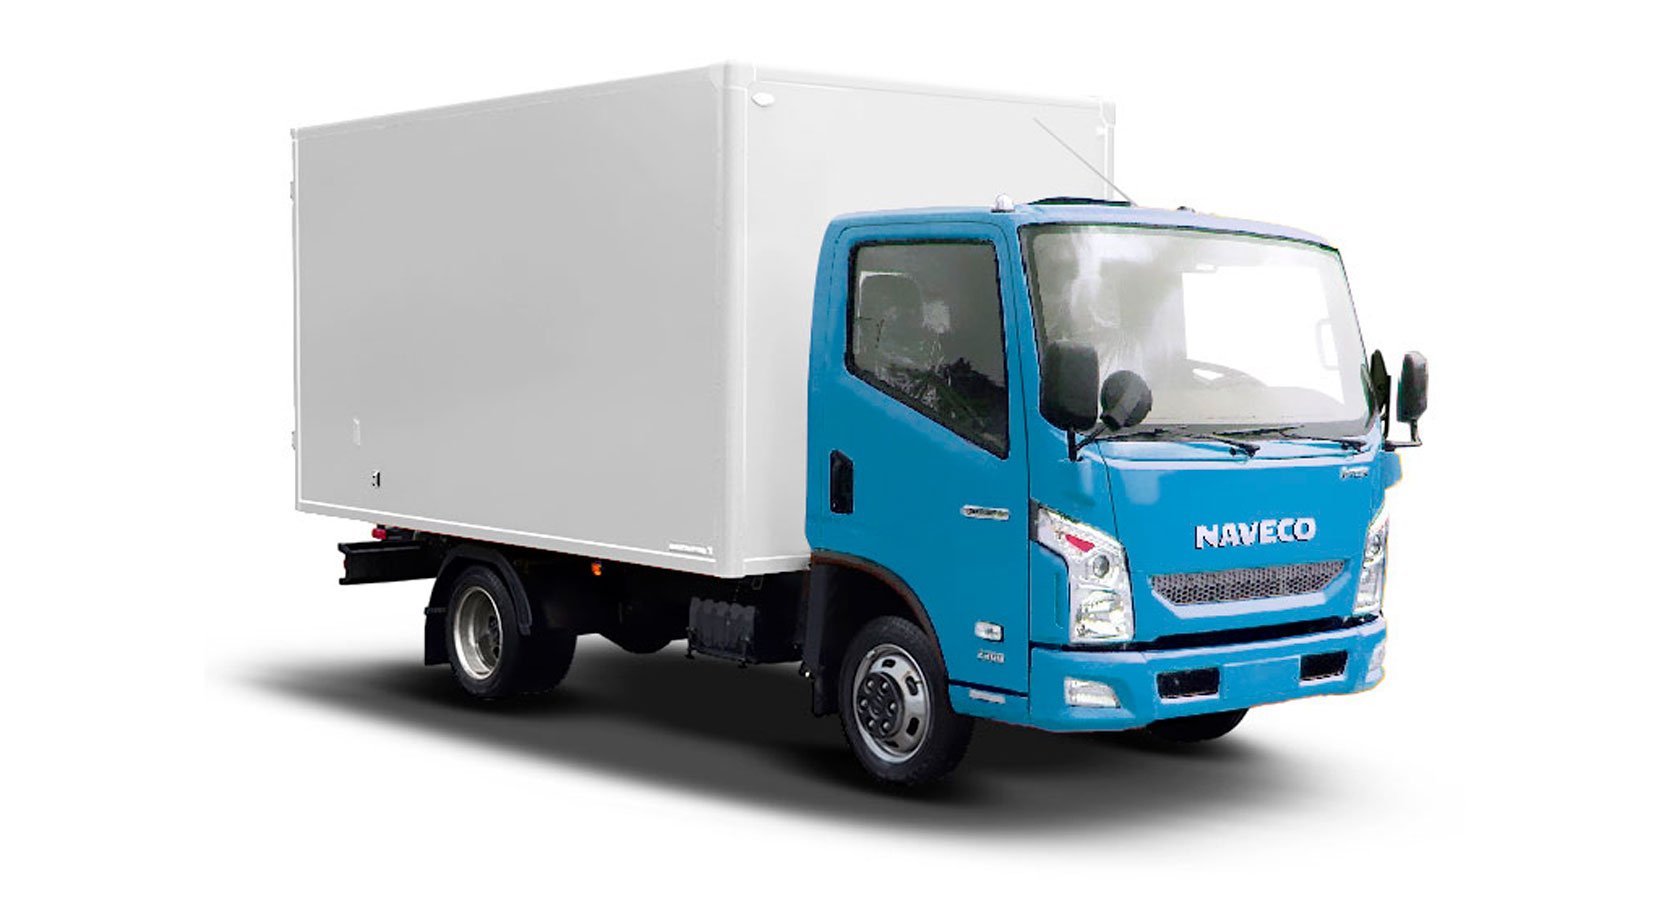 Ч 5 тонны. Грузовик Naveco c300. Hyundai 72, фургон 3,5т. Фотон бортовой 5 тонн. Грузовик Навеко 3 тонн.